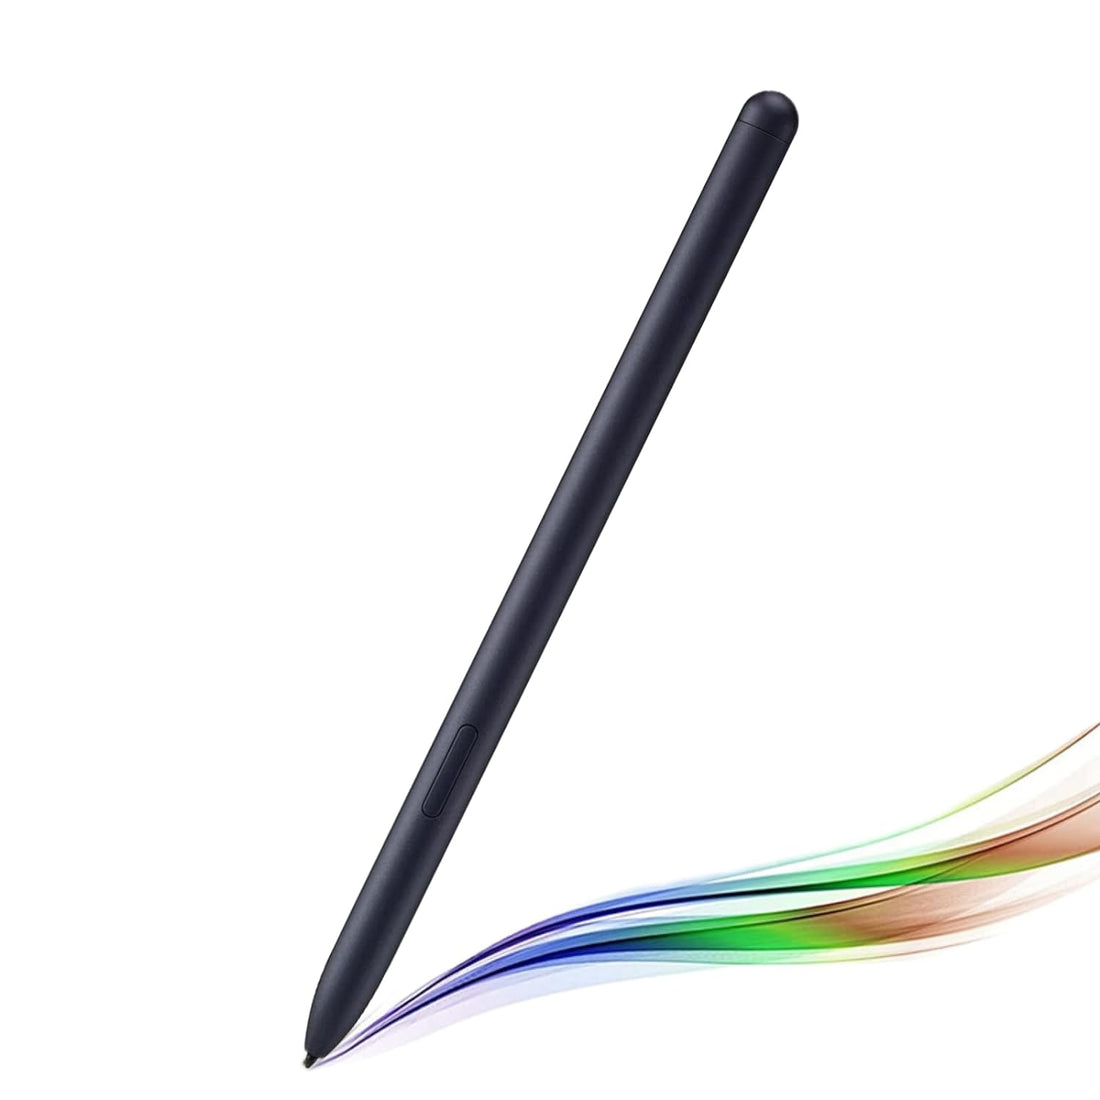 EMR Stylus Pen Compatible with Remarkable 2 Pen, 4096 Pressure Levels, Palm Rejection, CnHot EMR Stylus Pen for Remarkable Tablet (Black)